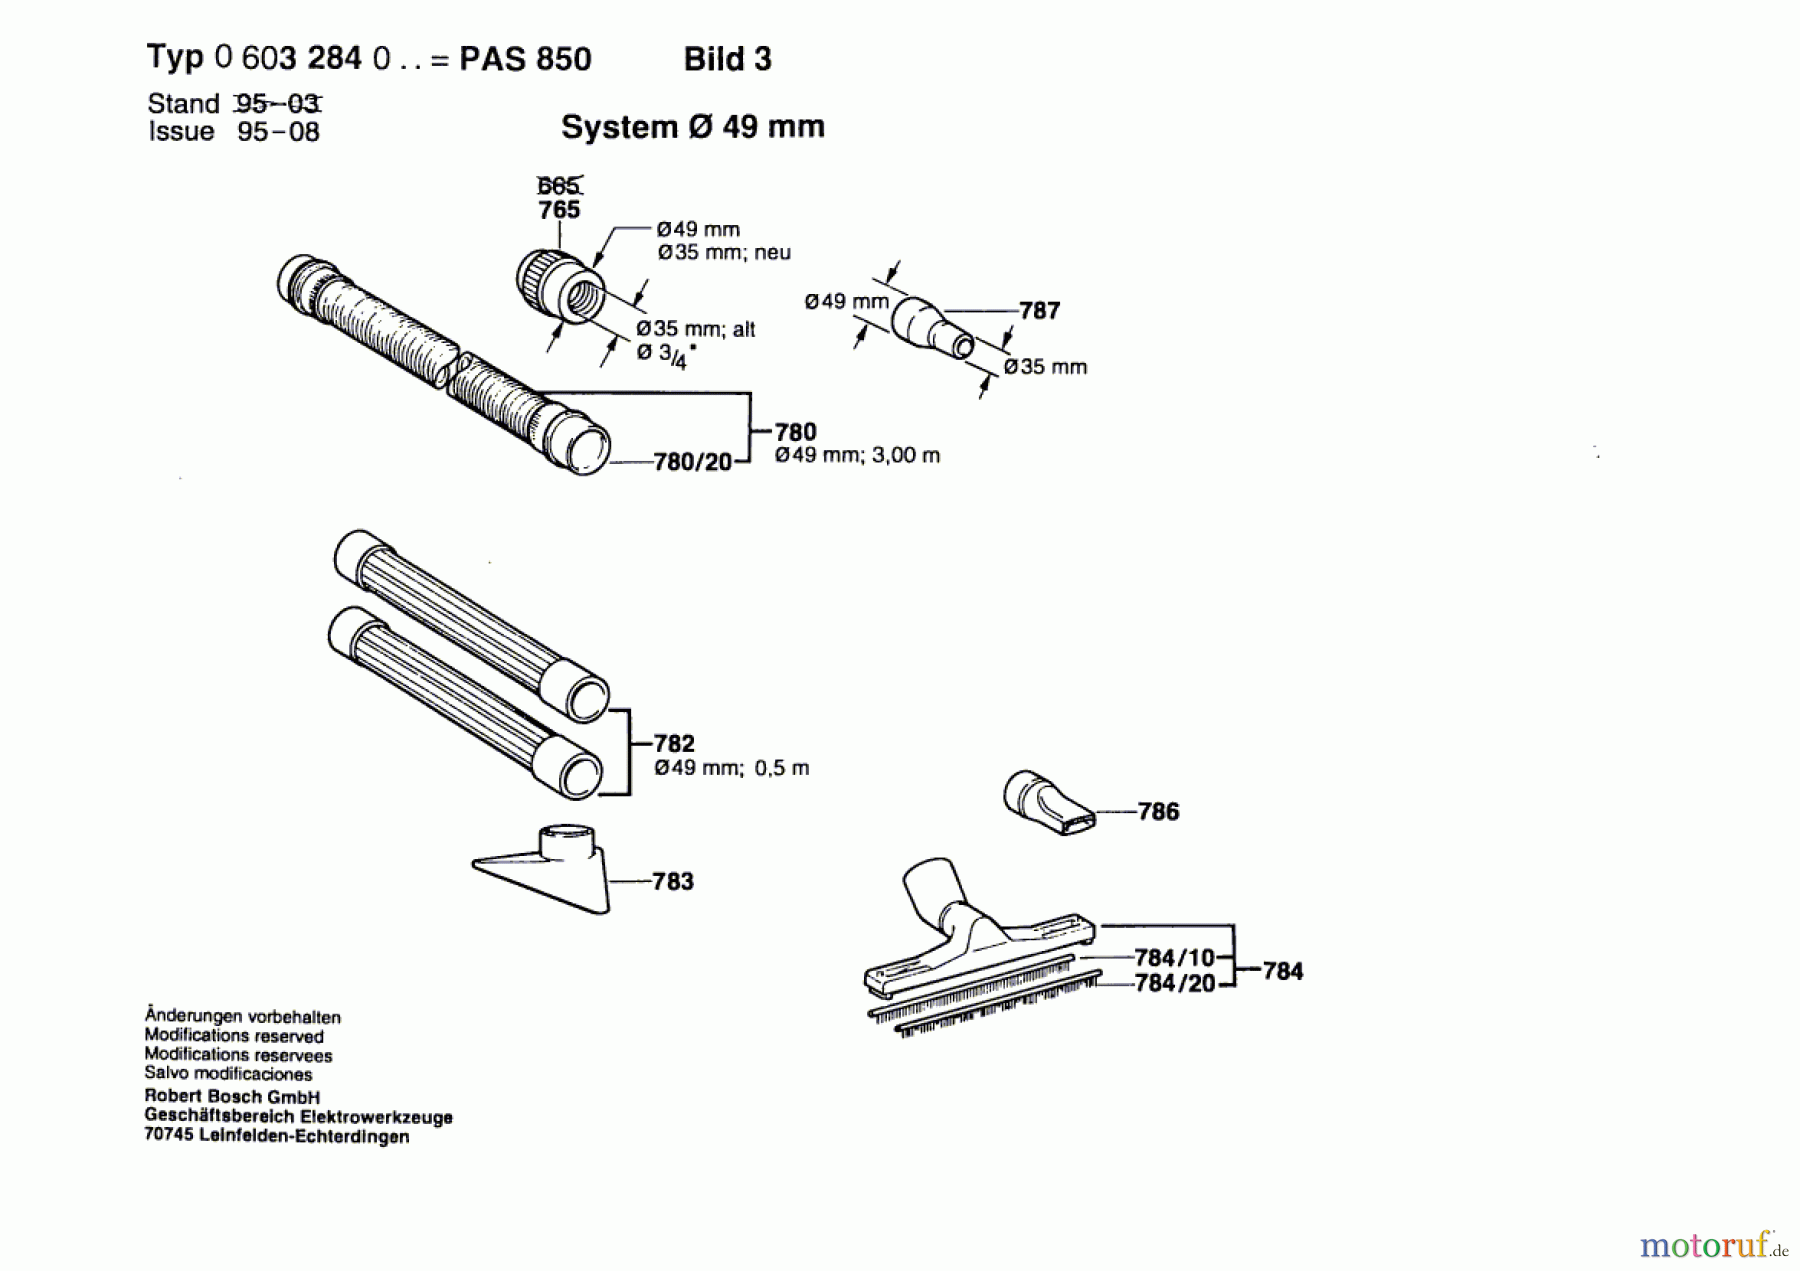  Bosch Werkzeug Hw-Allzwecksauger PAS 850 Seite 3